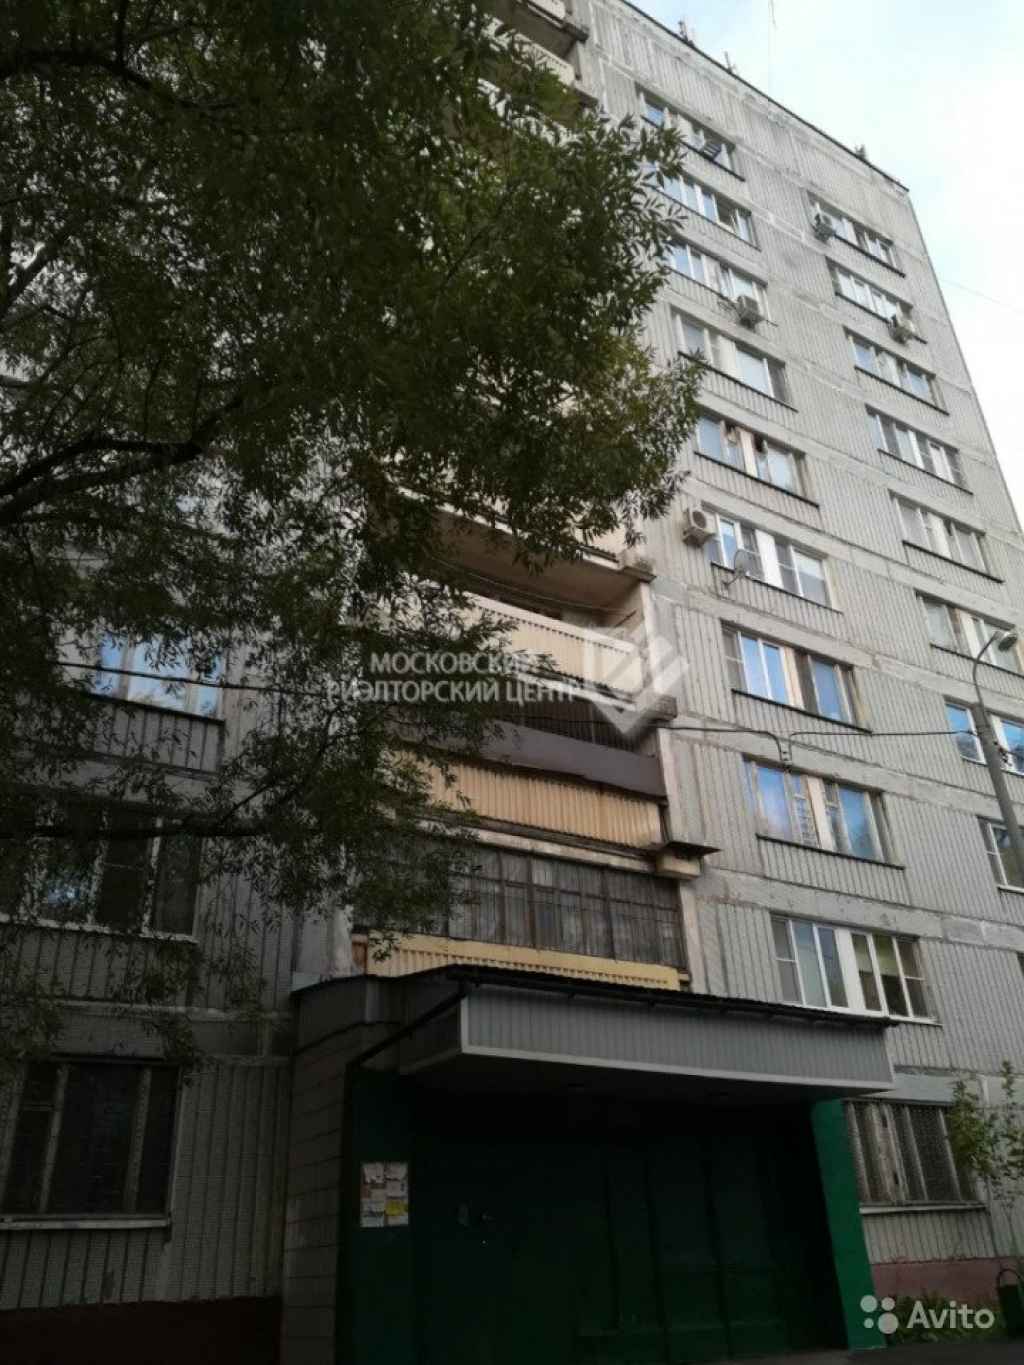 1-к квартира, 38.3 м², 6/10 эт. в Москве. Фото 1